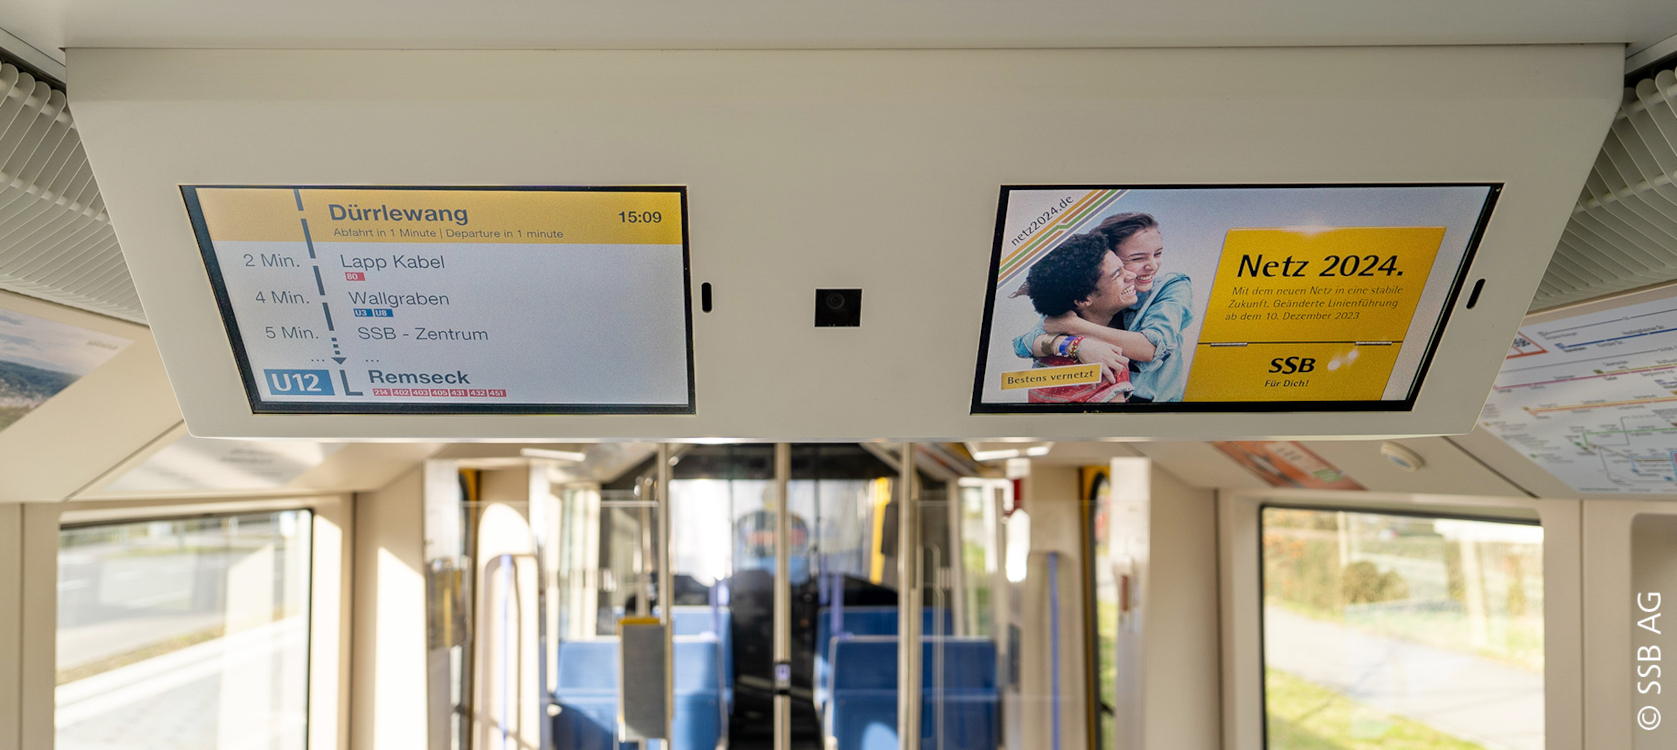 Mcrud bespielt die Fahrgast-Displays mit Infotainment-Inhalten und vermarktet sie programmatisch. (Foto: SSB AG)